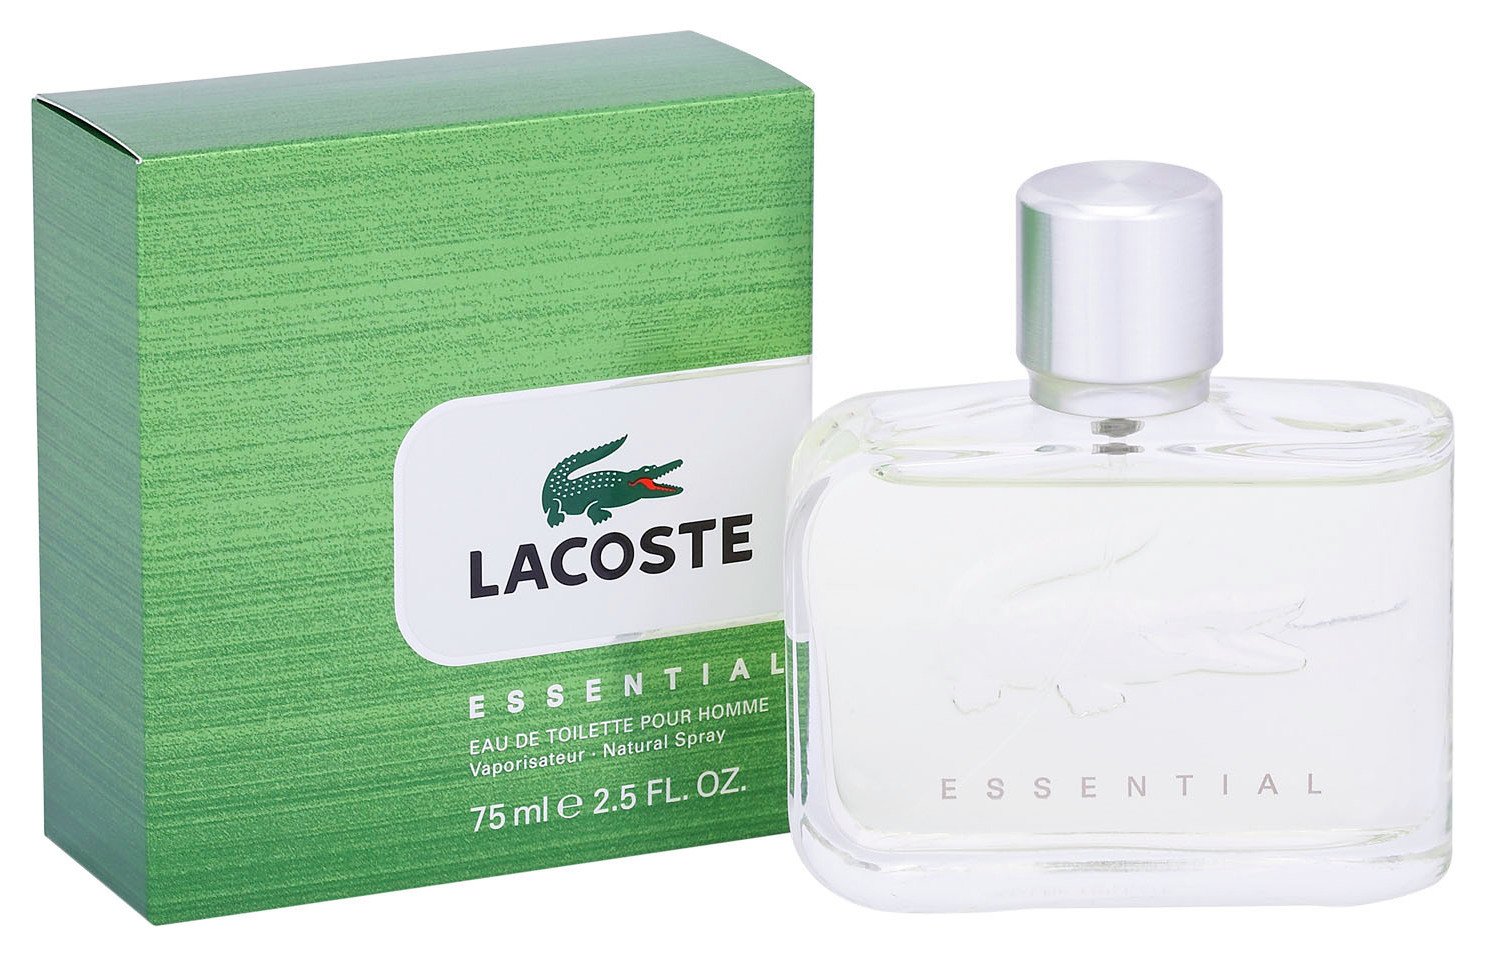 Review of Lacoste Essential Eau de Toilette for Men - 75ml